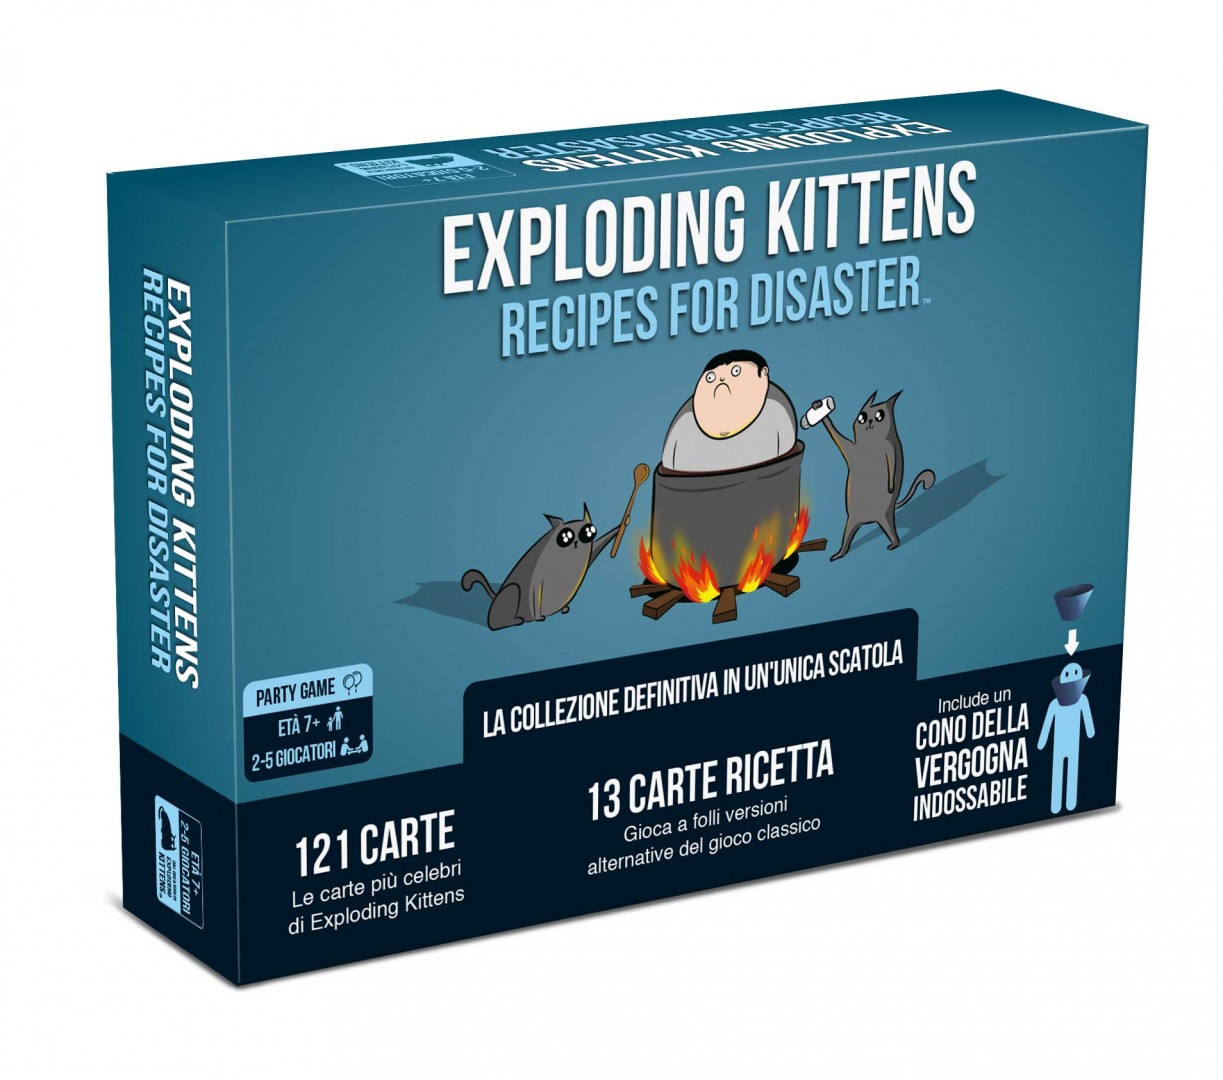 Exploding Kittens - Recipes for disaster